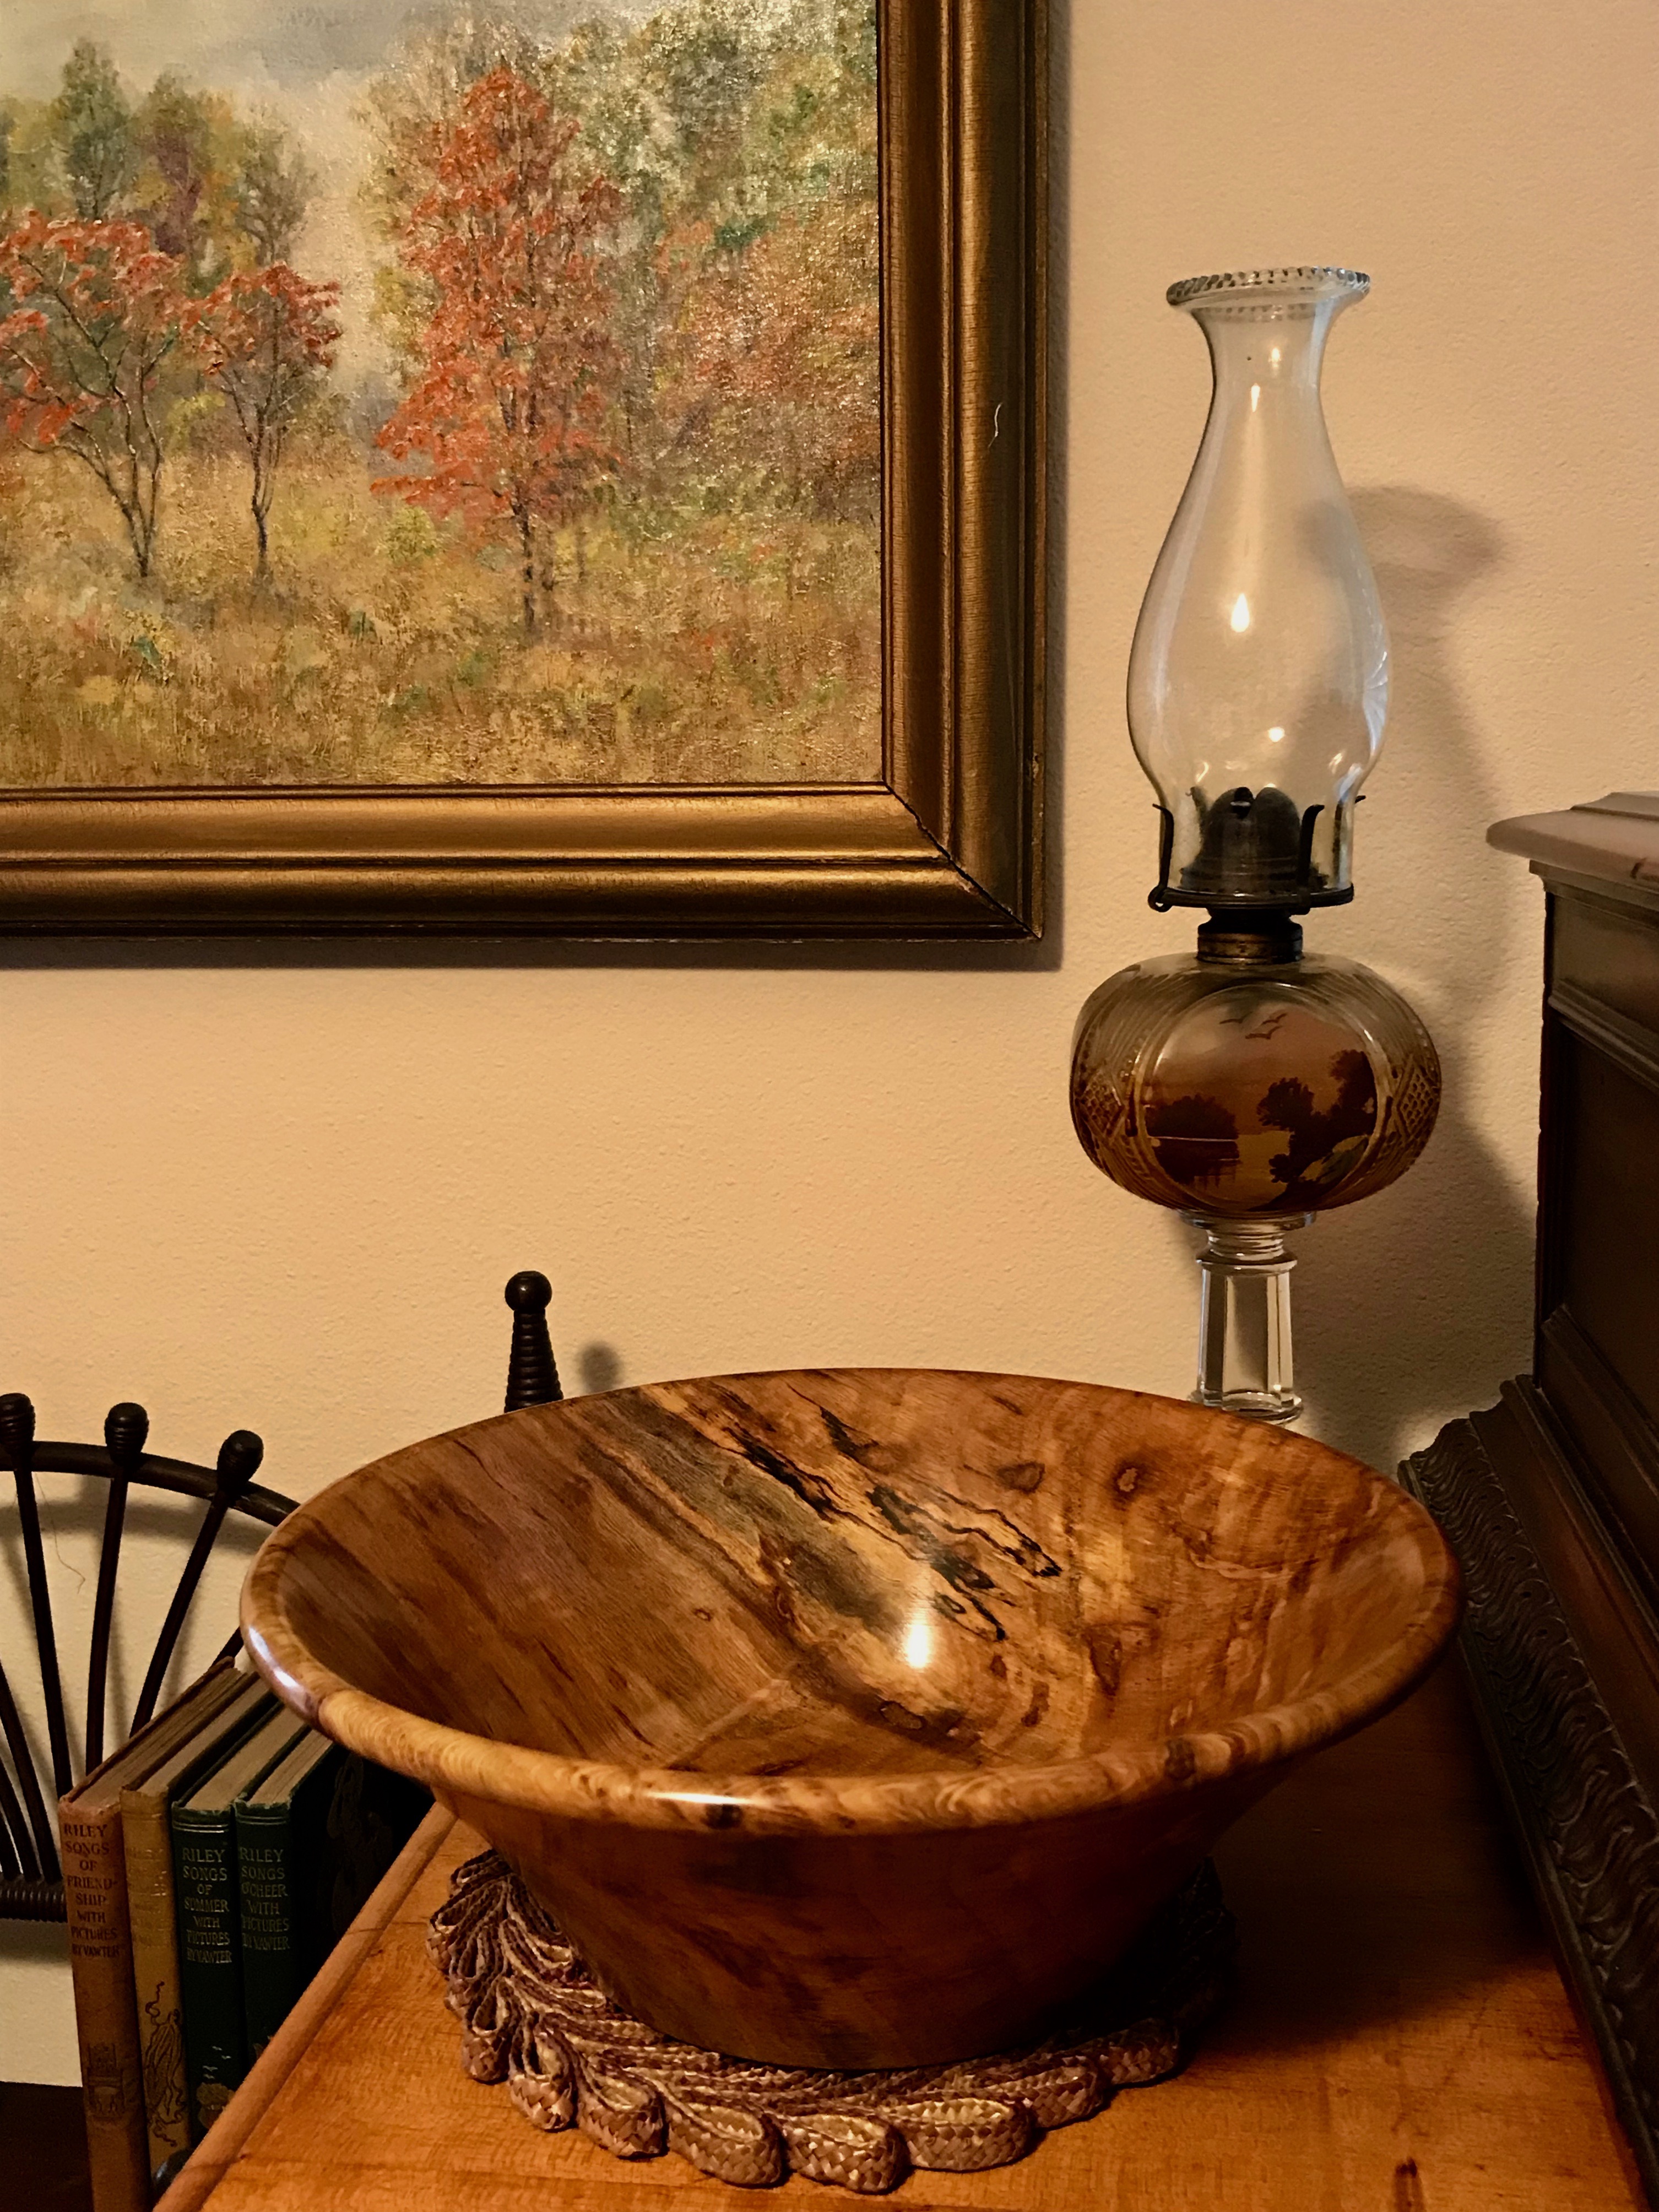 Bur oak bowl in Seattle (7:10:19)